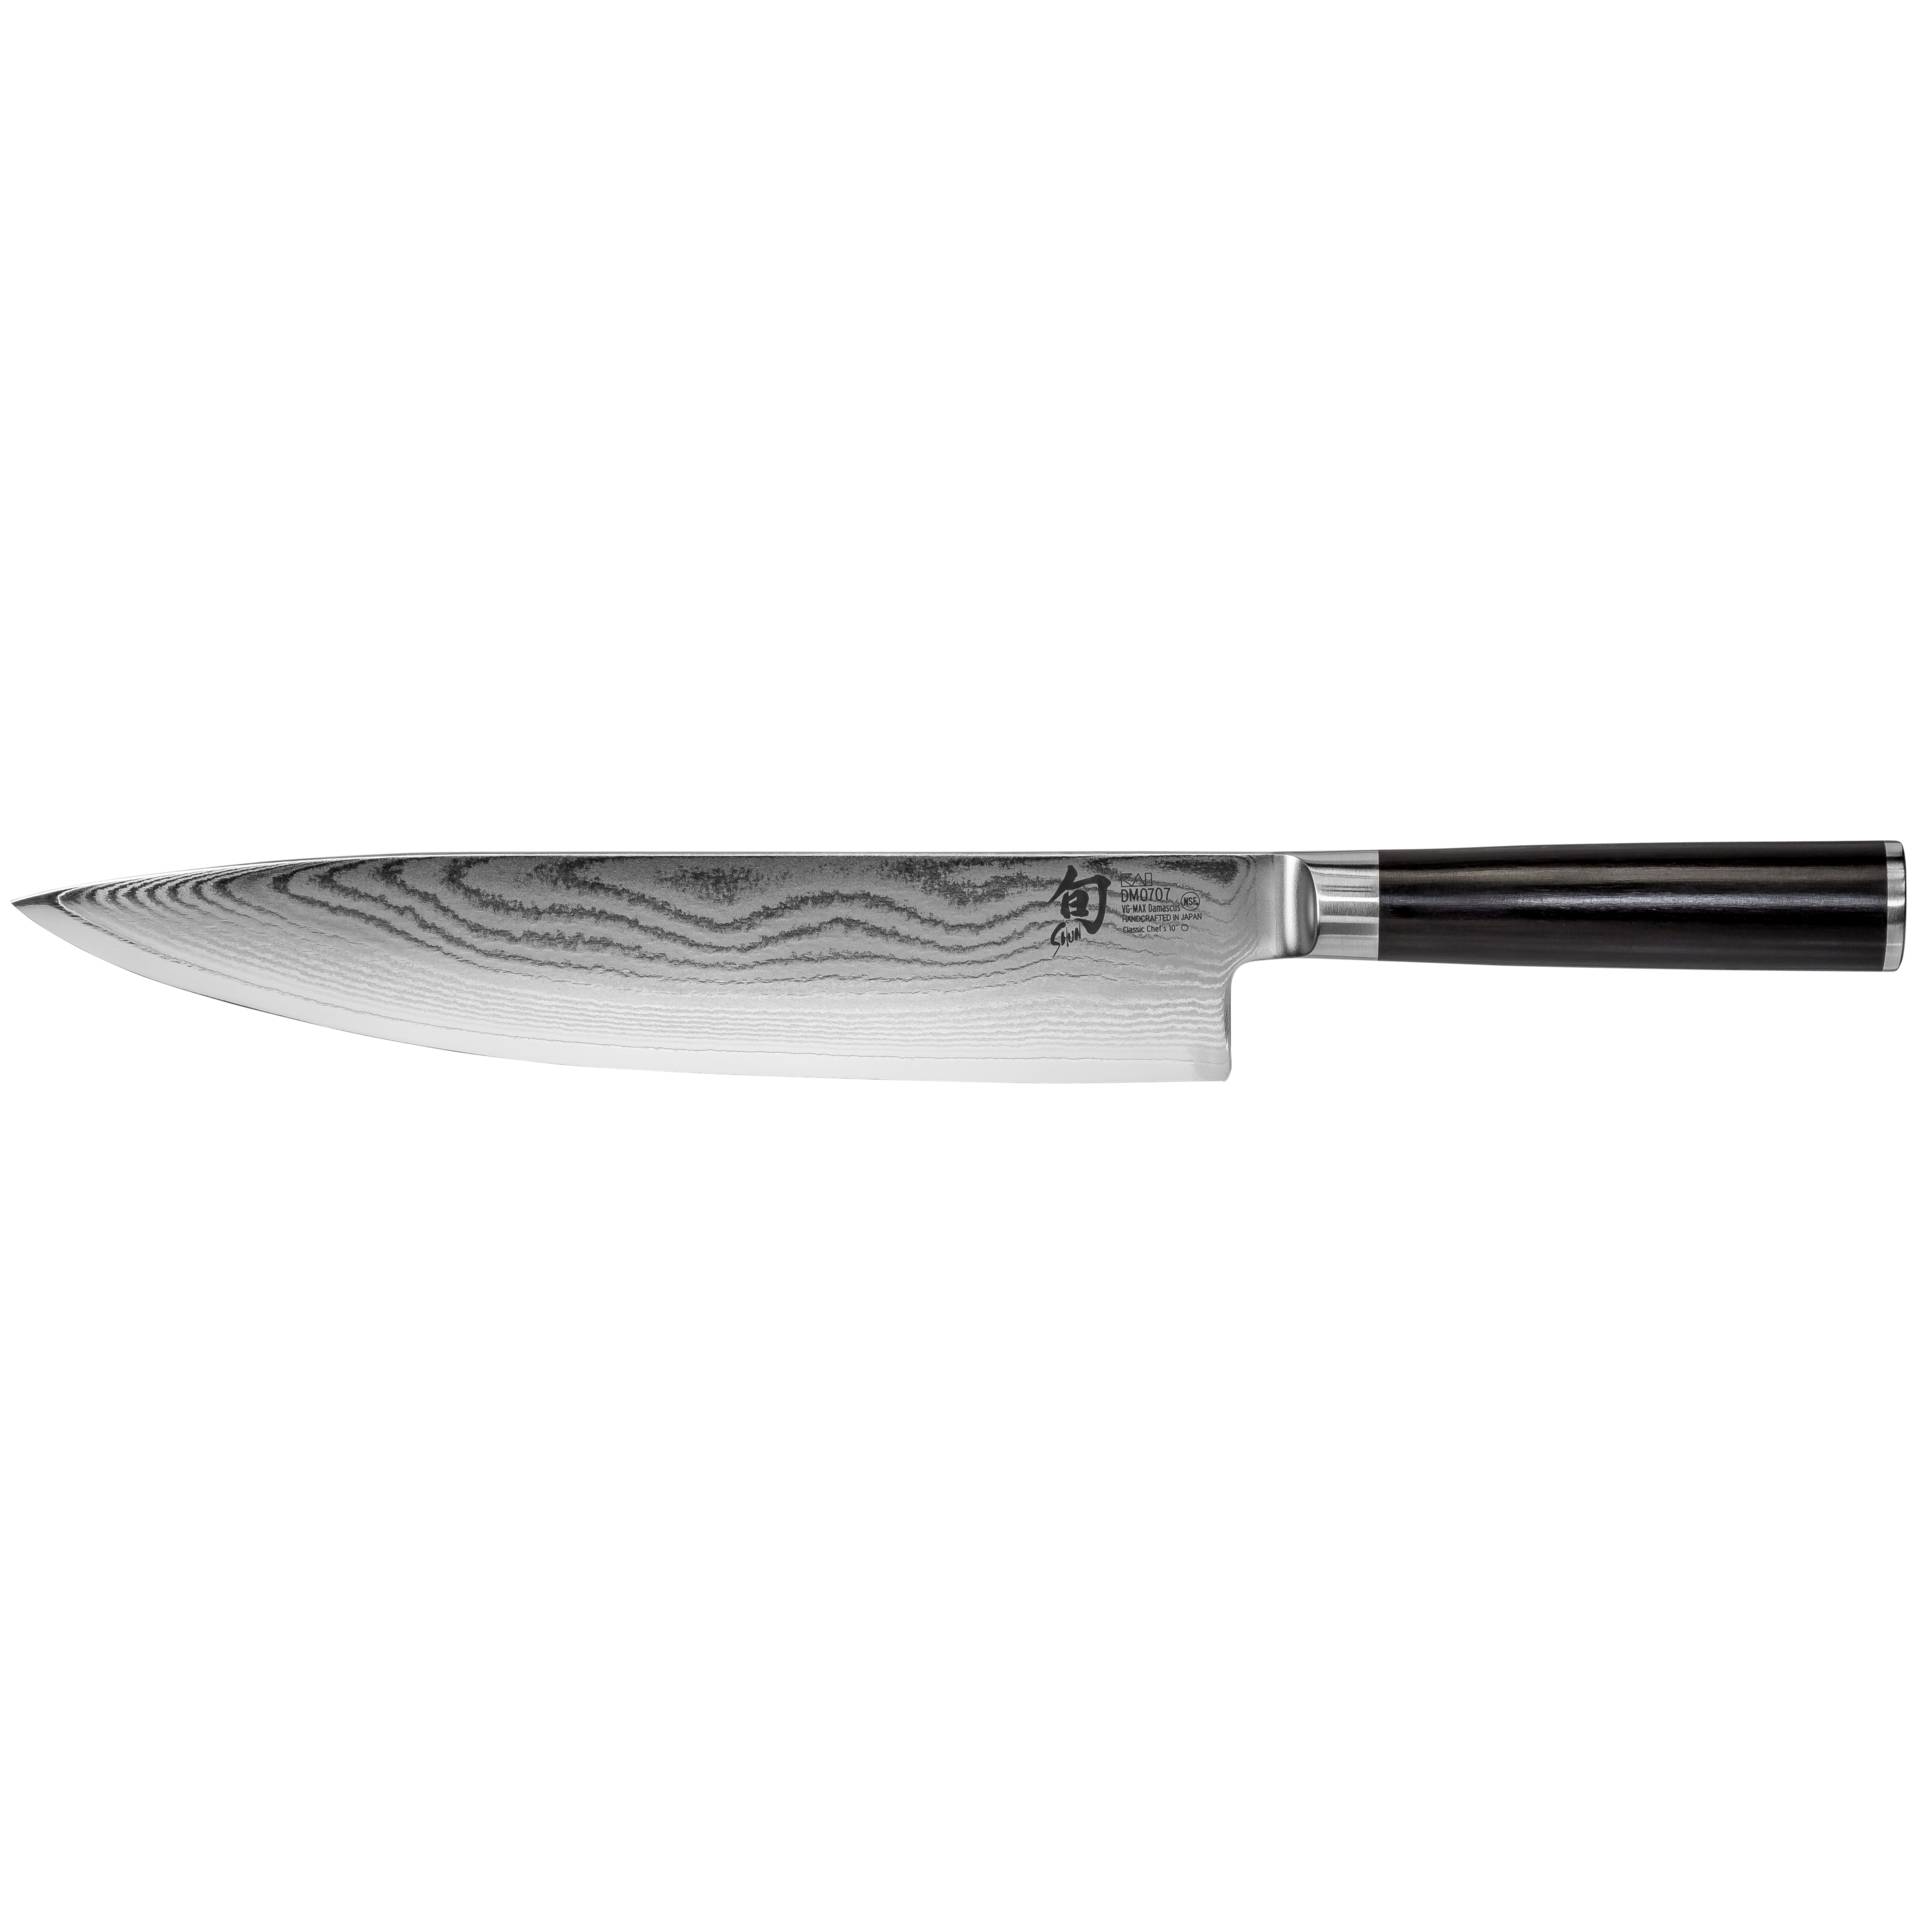 KAI Shun Classic coltello cuoco 25,5cm